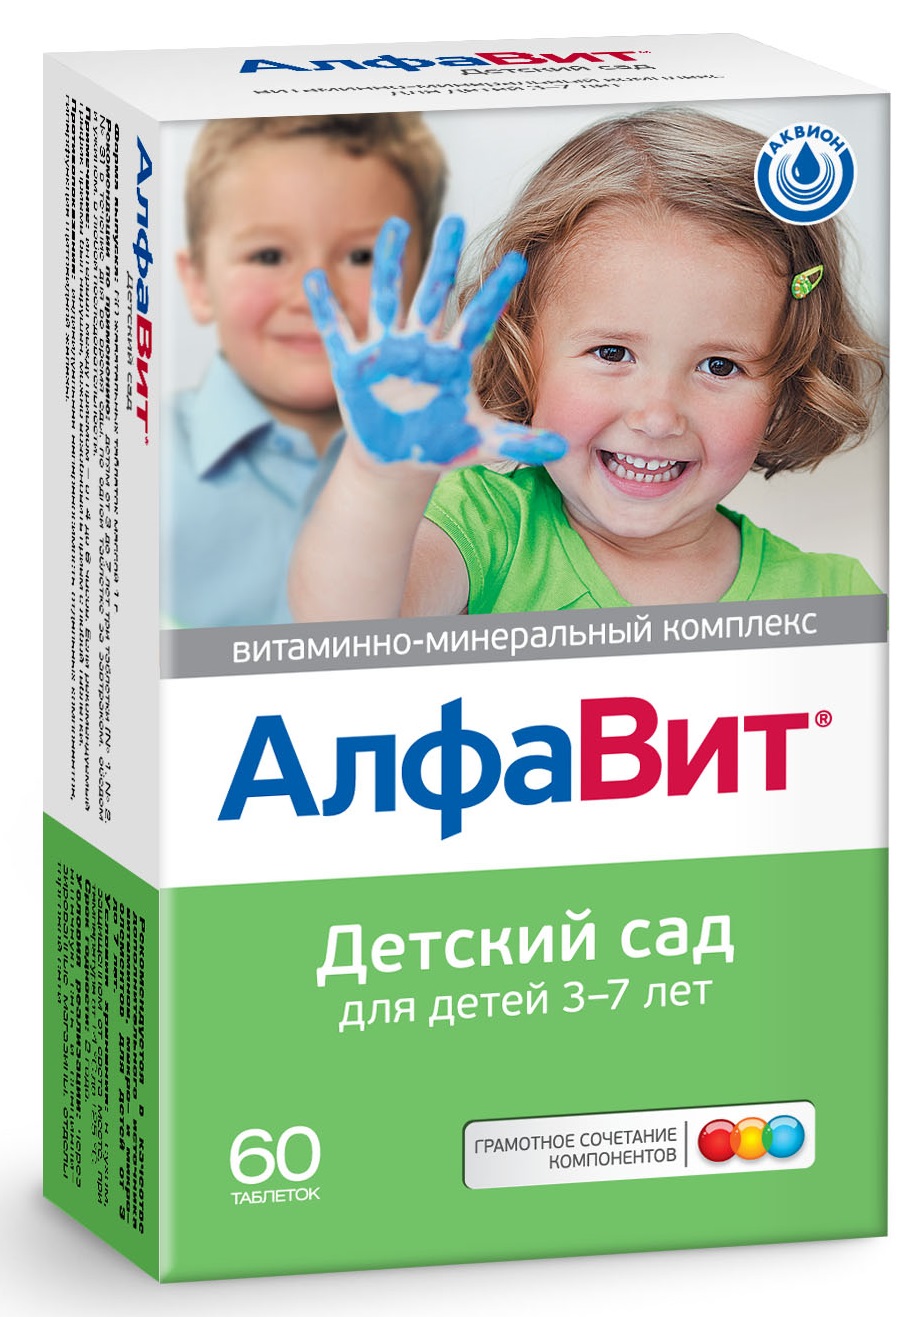 Алфавит Детский сад таблетки для детей 3-7 лет 60 шт.